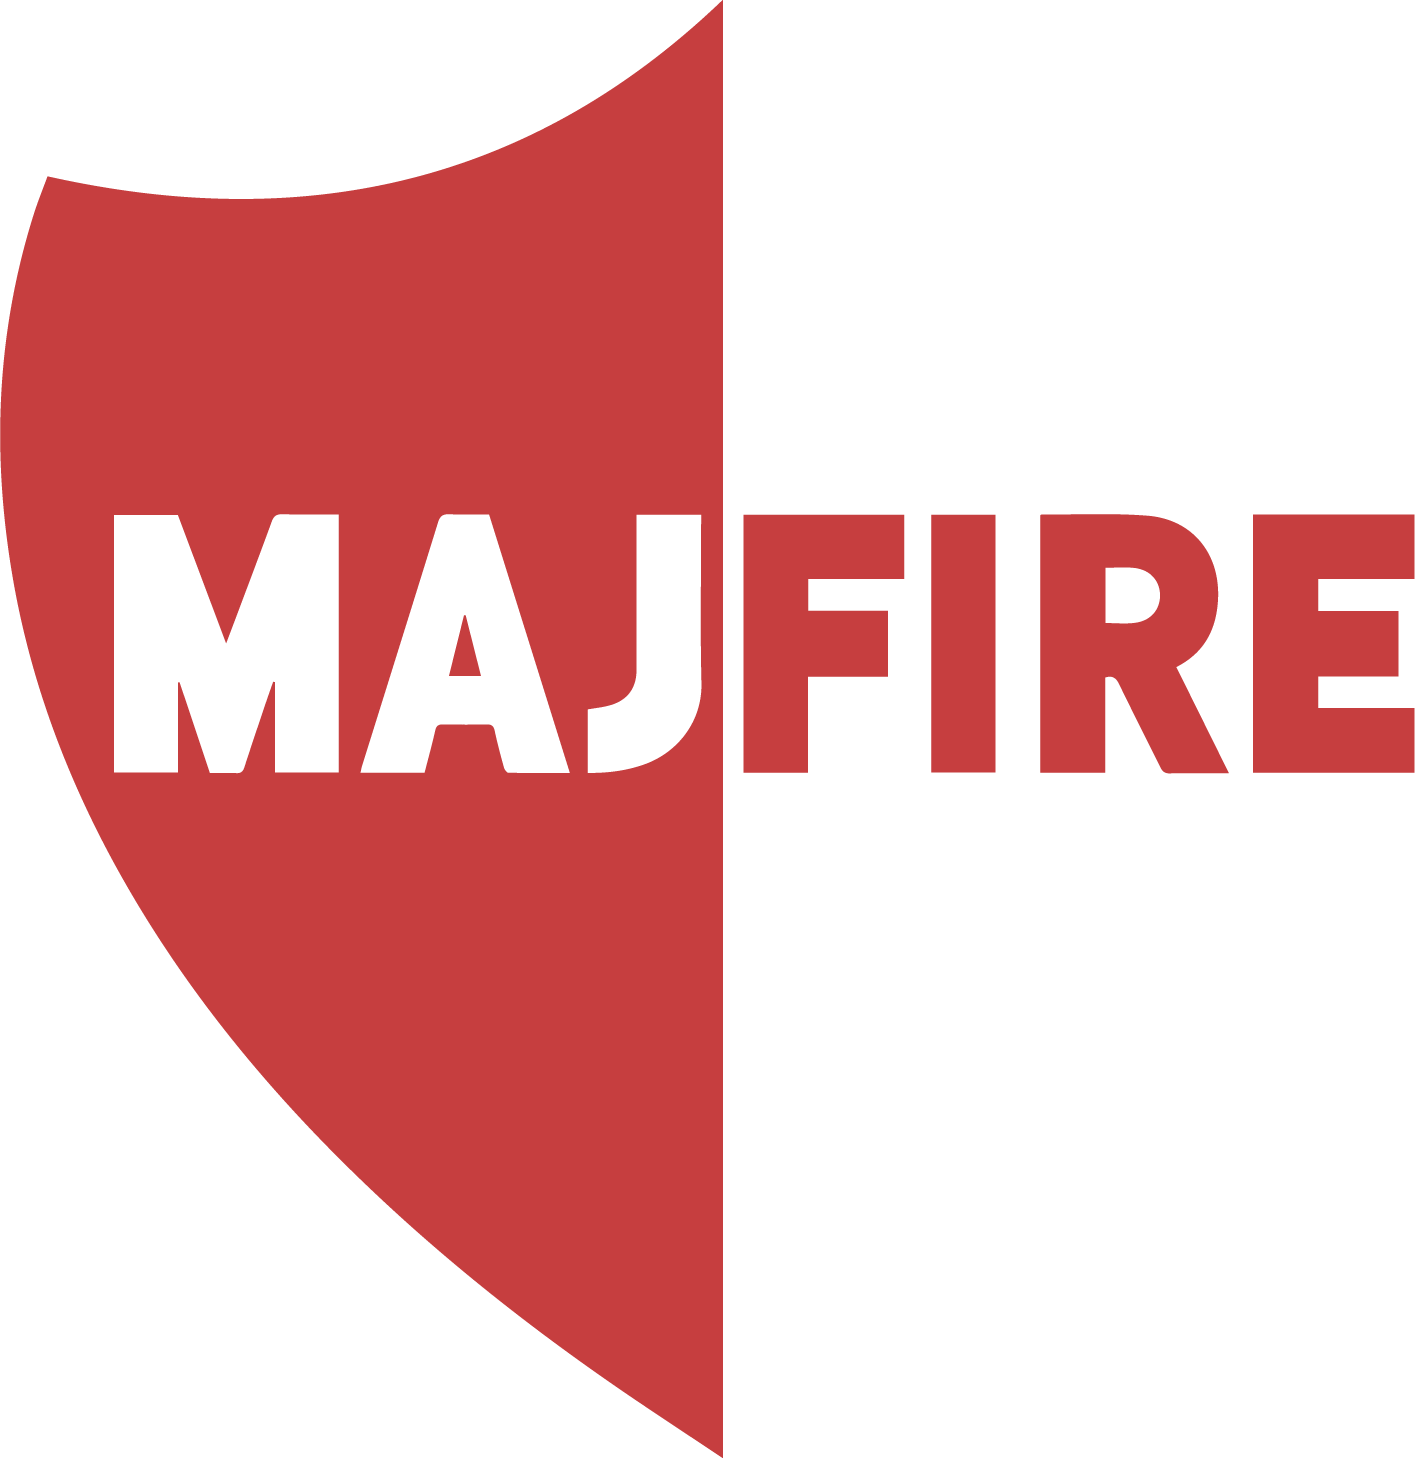 MAJFIre logo